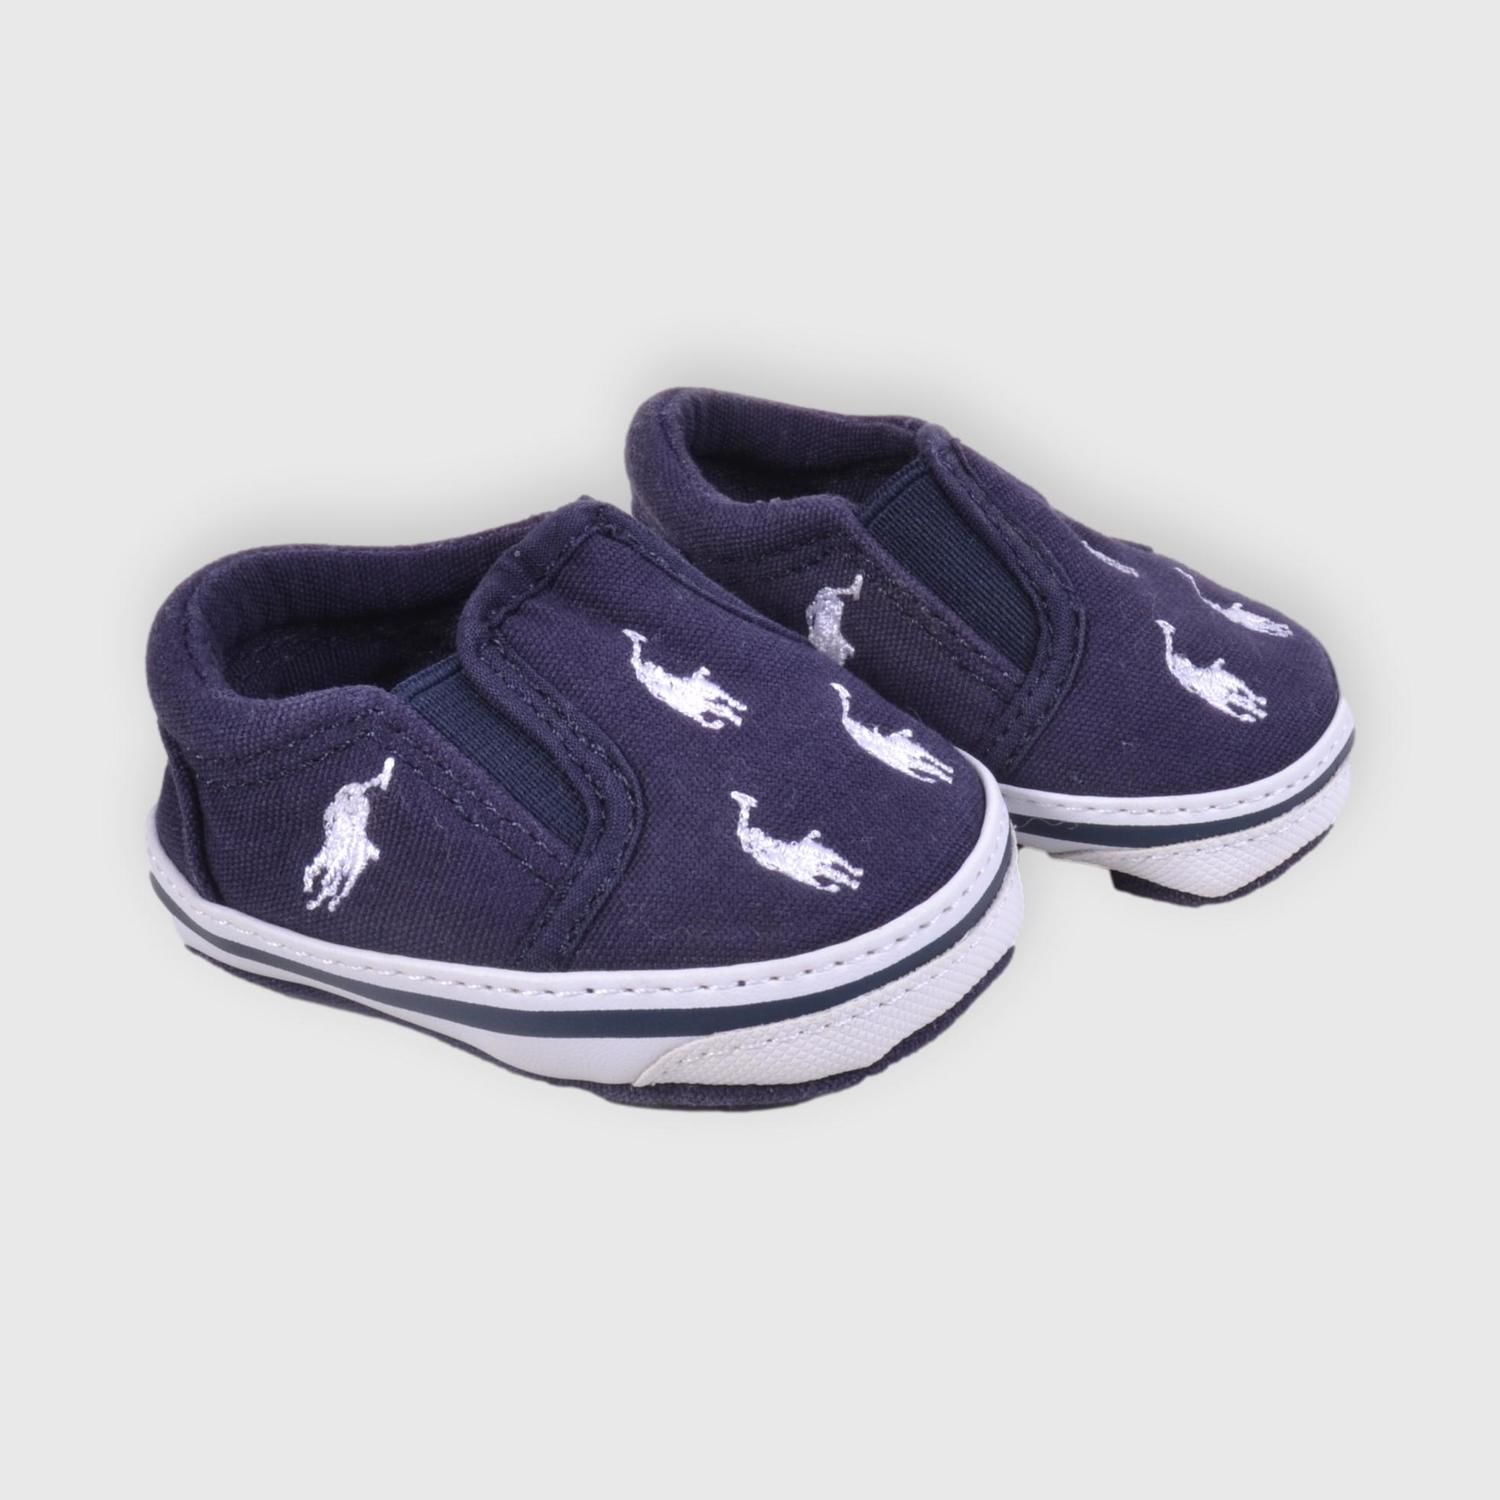 Zapatos Polo Ralph T16 - Ronda - Tienda de ropa de mano para bebés y niños